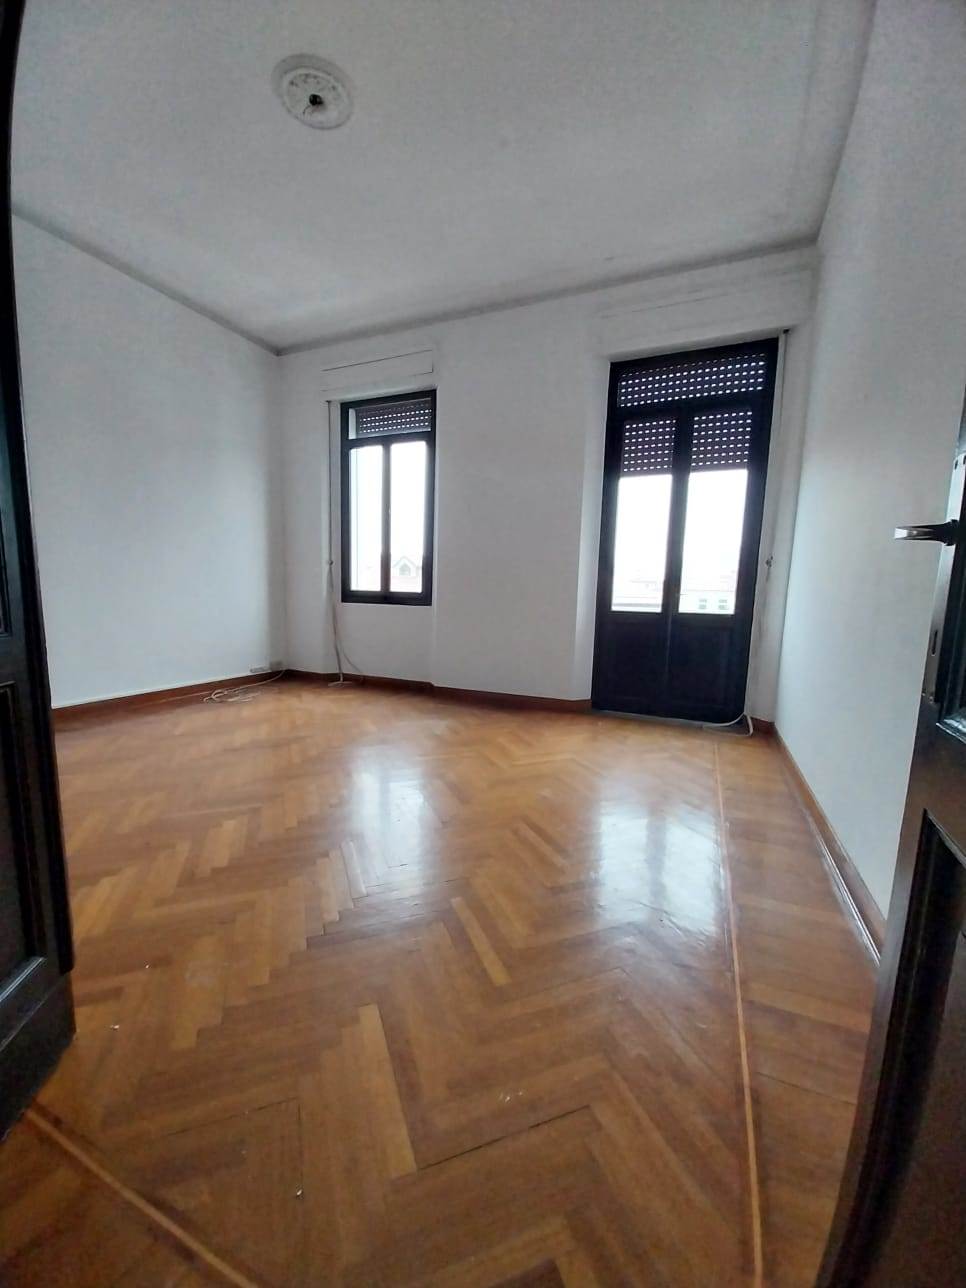 Appartamento in vendita a Padova - Zona: 4 . Sud-Est (S.Croce-S. Osvaldo, Bassanello-Voltabarozzo)